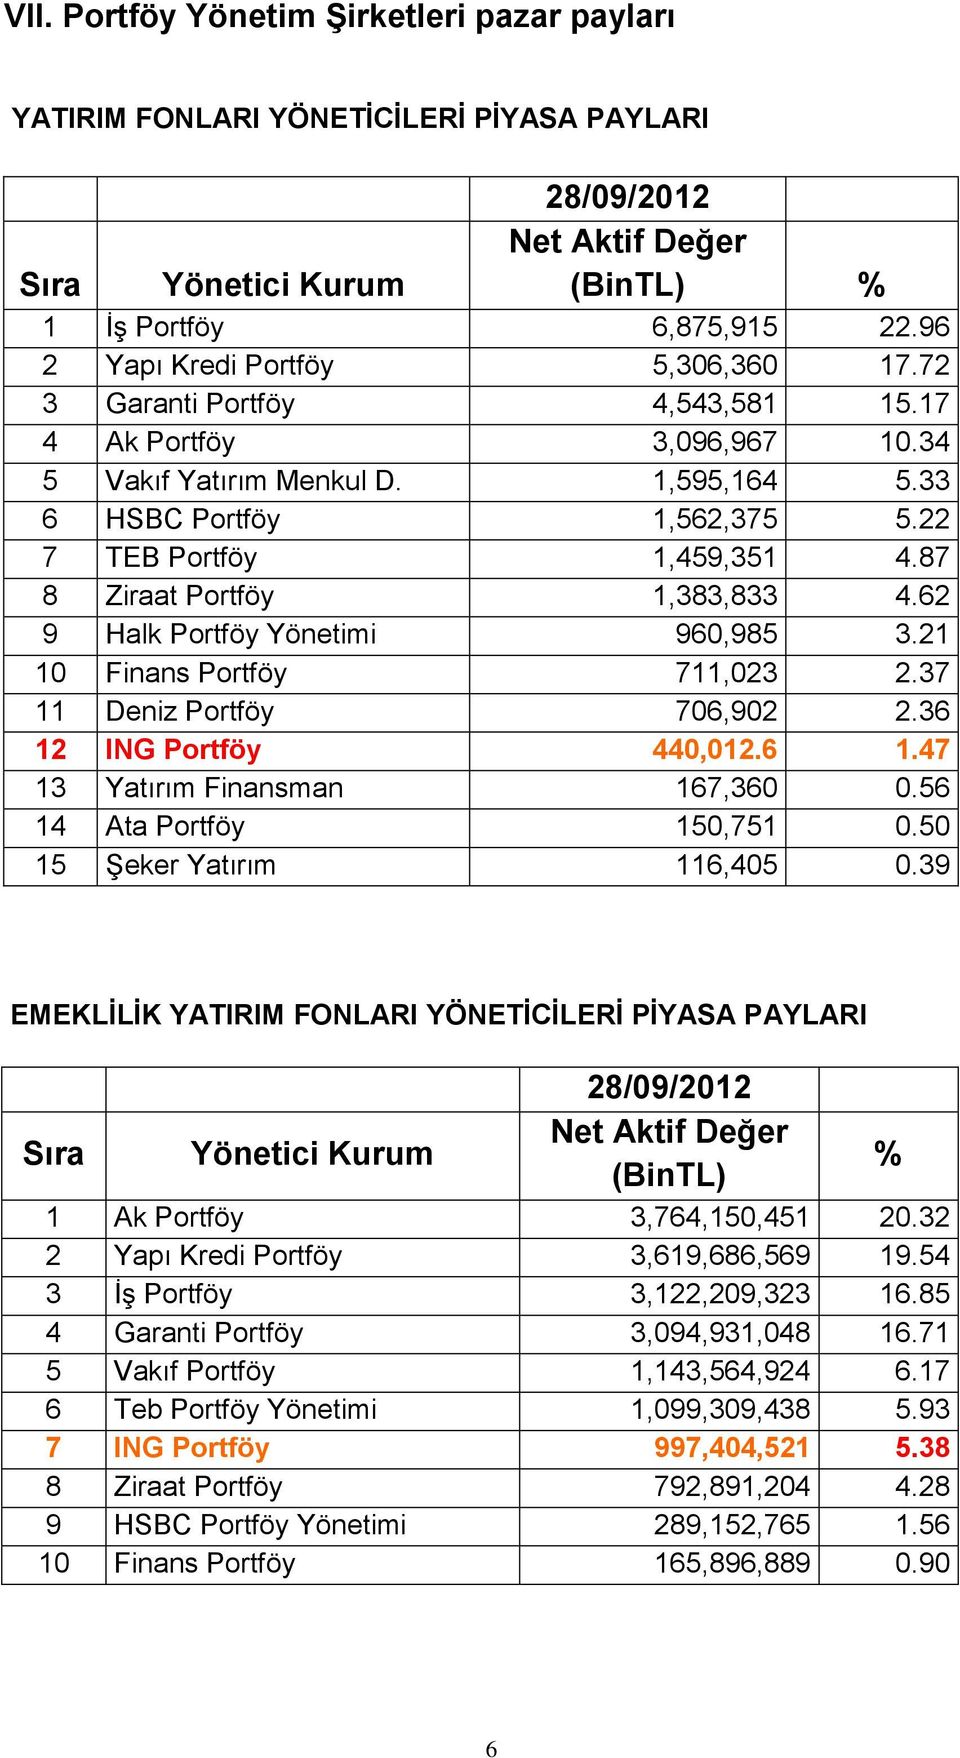 87 8 Ziraat Portföy 1,383,833 4.62 9 Halk Portföy Yönetimi 960,985 3.21 10 Finans Portföy 711,023 2.37 11 Deniz Portföy 706,902 2.36 12 ING Portföy 440,012.6 1.47 13 Yatırım Finansman 167,360 0.